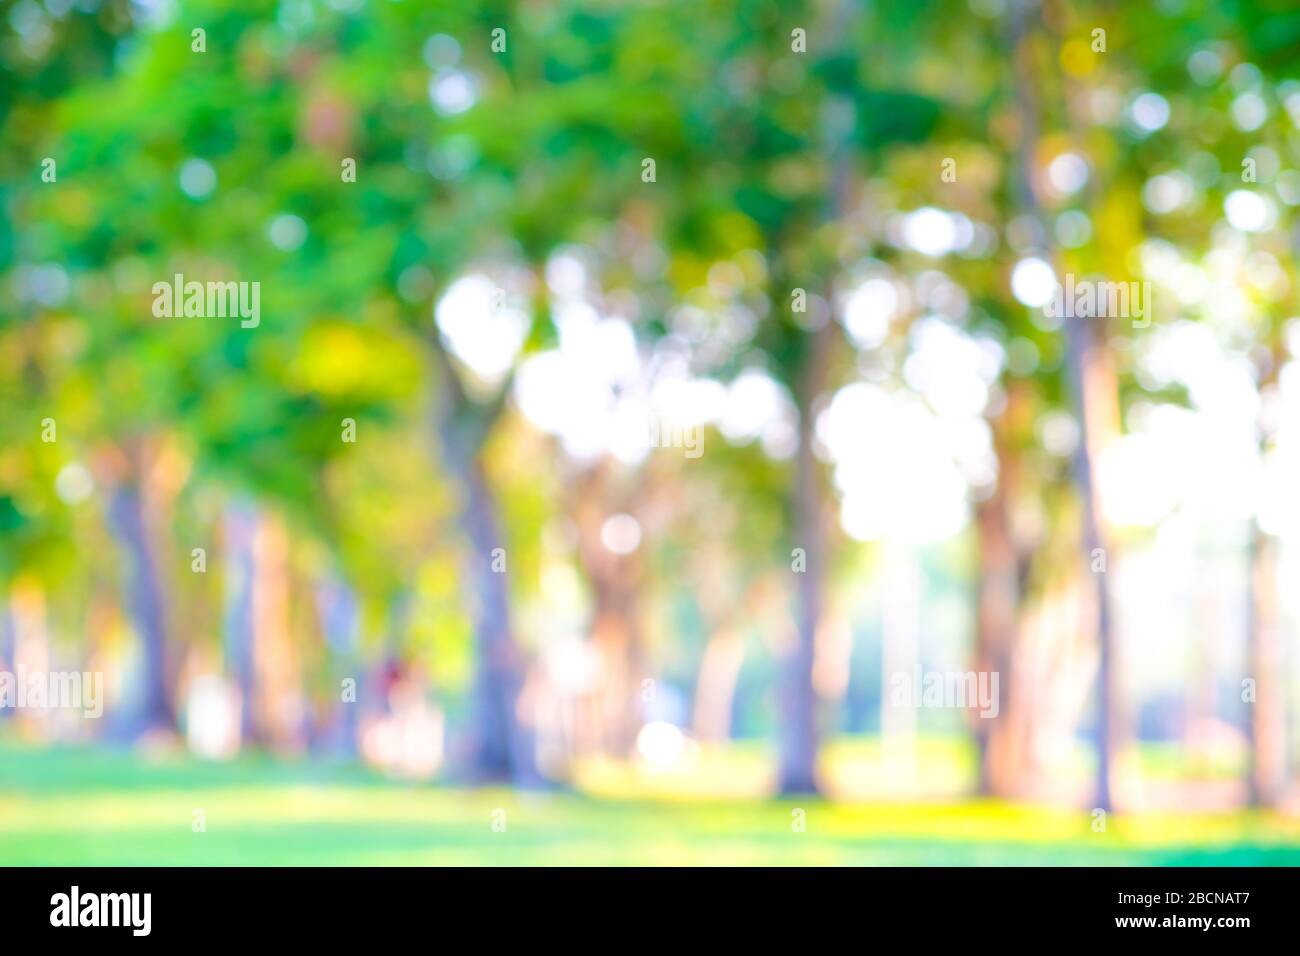 Công viên mơ màng với ánh sáng hoàng hôn xanh lá cây - Một nền DSLR của công viên với cảnh cây xanh mơ màng, ánh sáng hoàng hôn lấp lánh sẽ khiến người xem những cảm xúc yên bình và tĩnh lặng. Bức ảnh này sẽ có hiệu ứng thú vị với người xem.